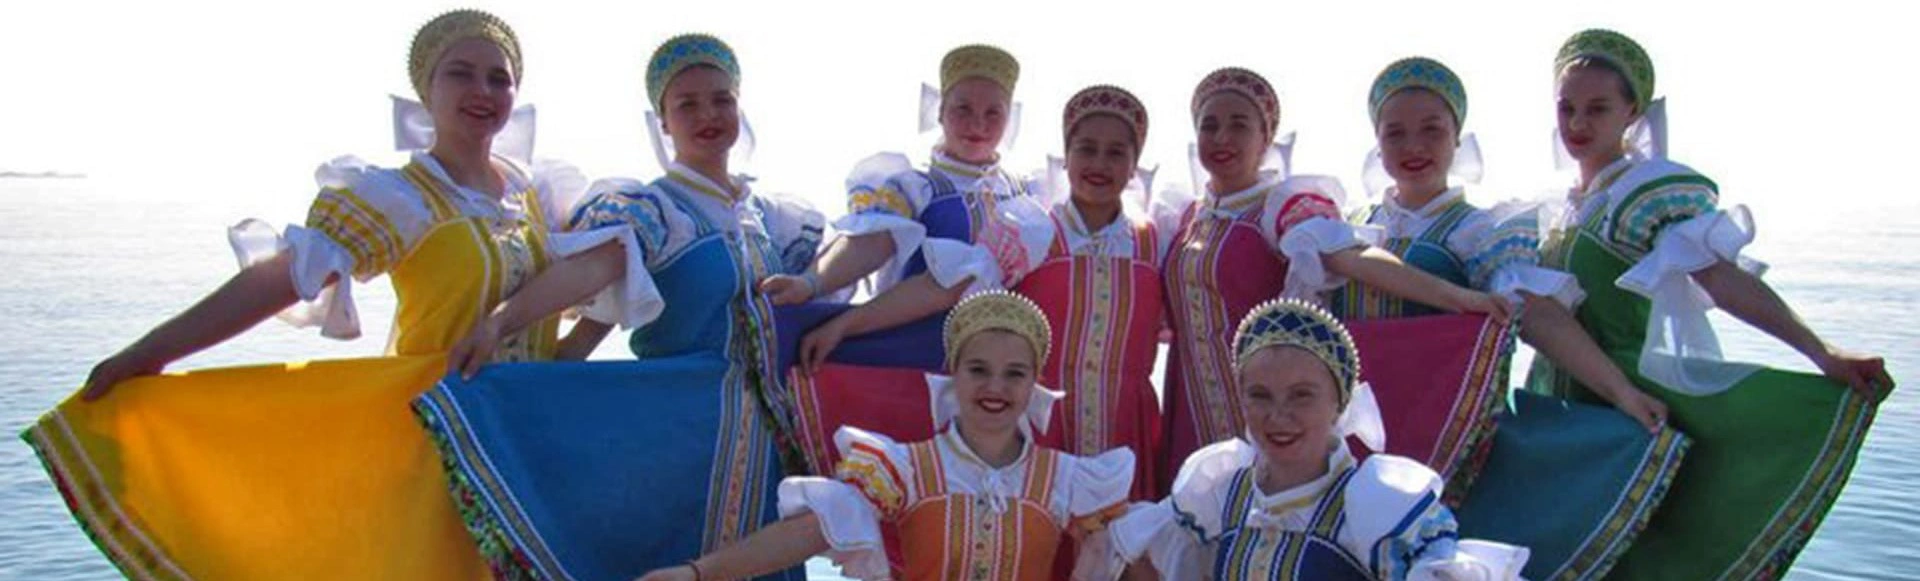 В Сочи пройдет мультиформатный фестиваль «Радуга талантов»